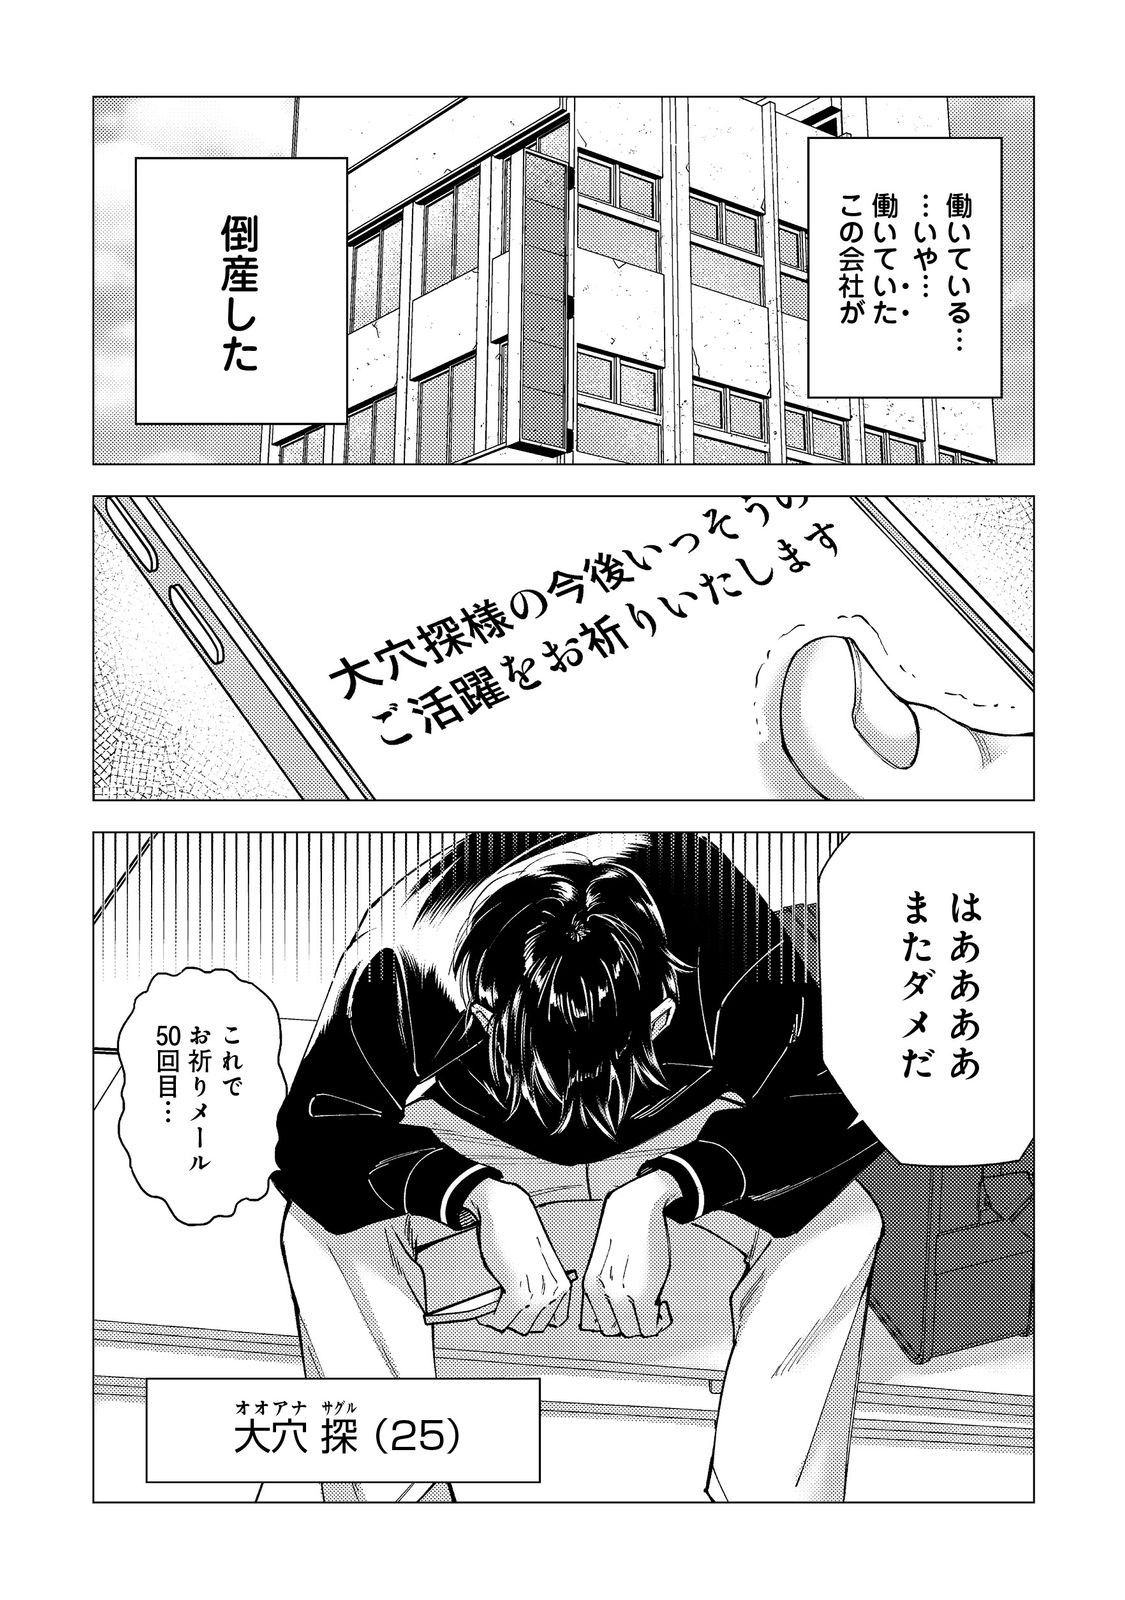 Kousotsu, Mushoku, Bocchi no Ore ga, Gendai Dungeon de Oku wo Kasegeta Wake - Chapter 1 - Page 5